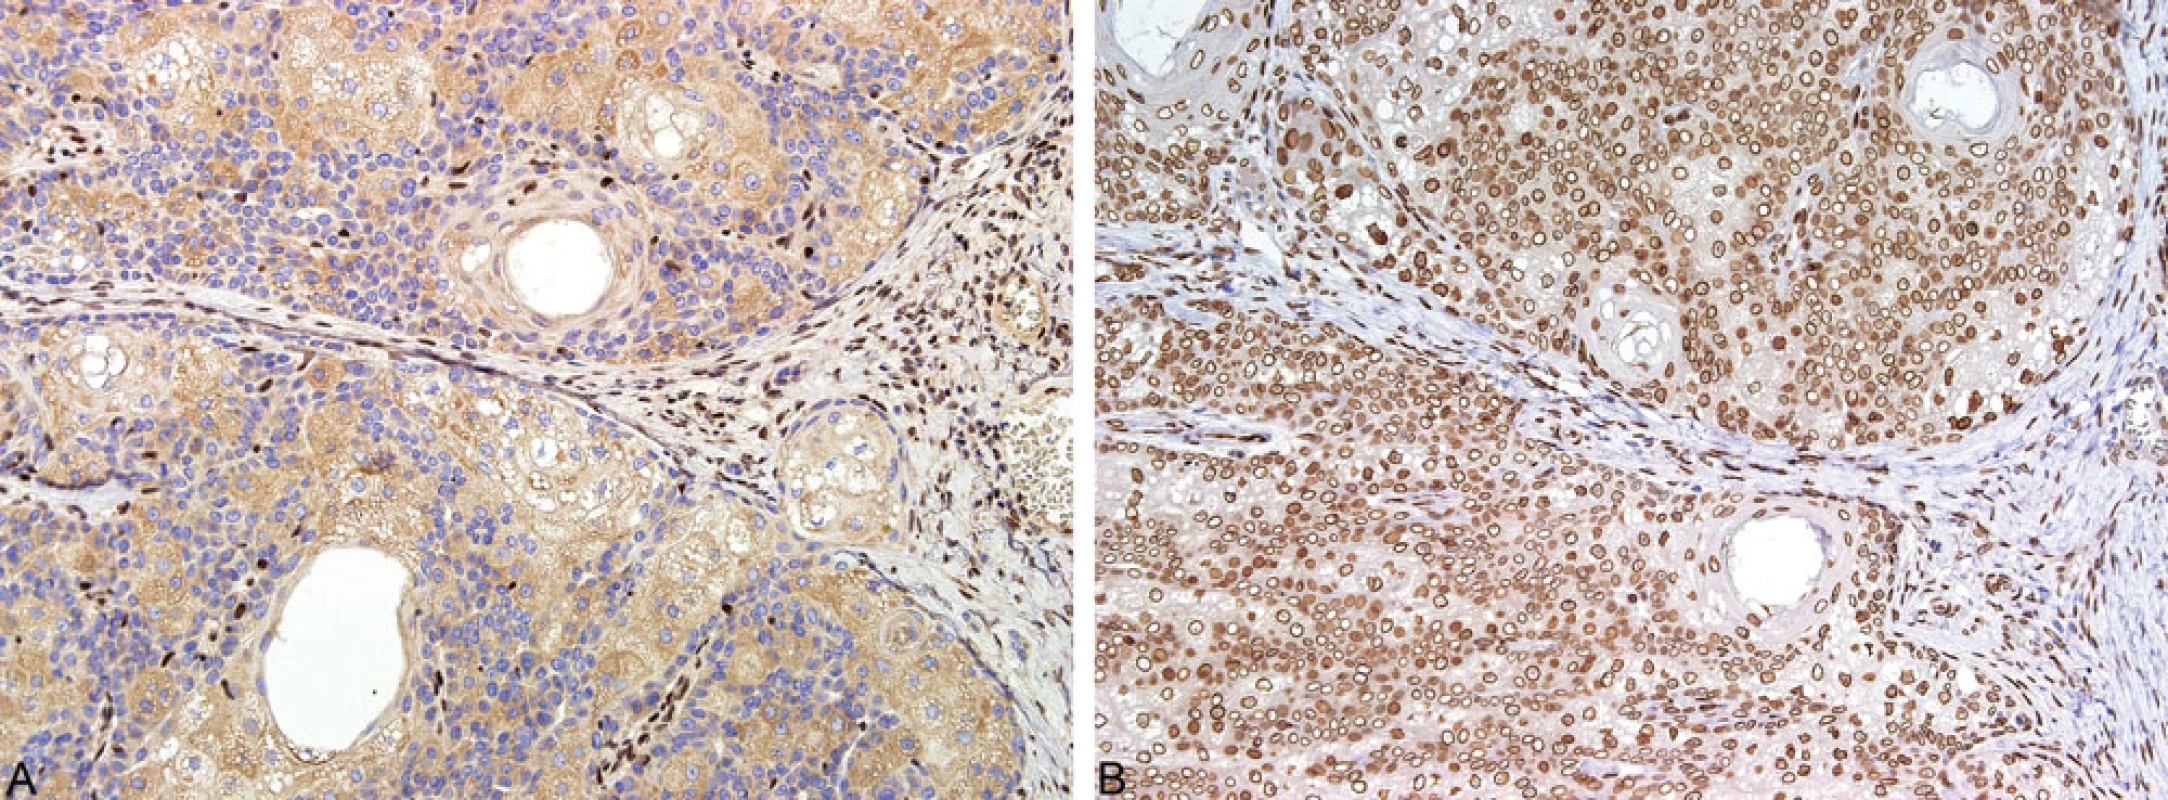 Imunohistochemické vyšetření exprese MMR proteinů: ztráta exprese MSH2 v nádorových buňkách s pozitivní interní kontrolou, tj. lymfocyty (A); exprese MLH1 proteinu nádorovými buňkami (B)